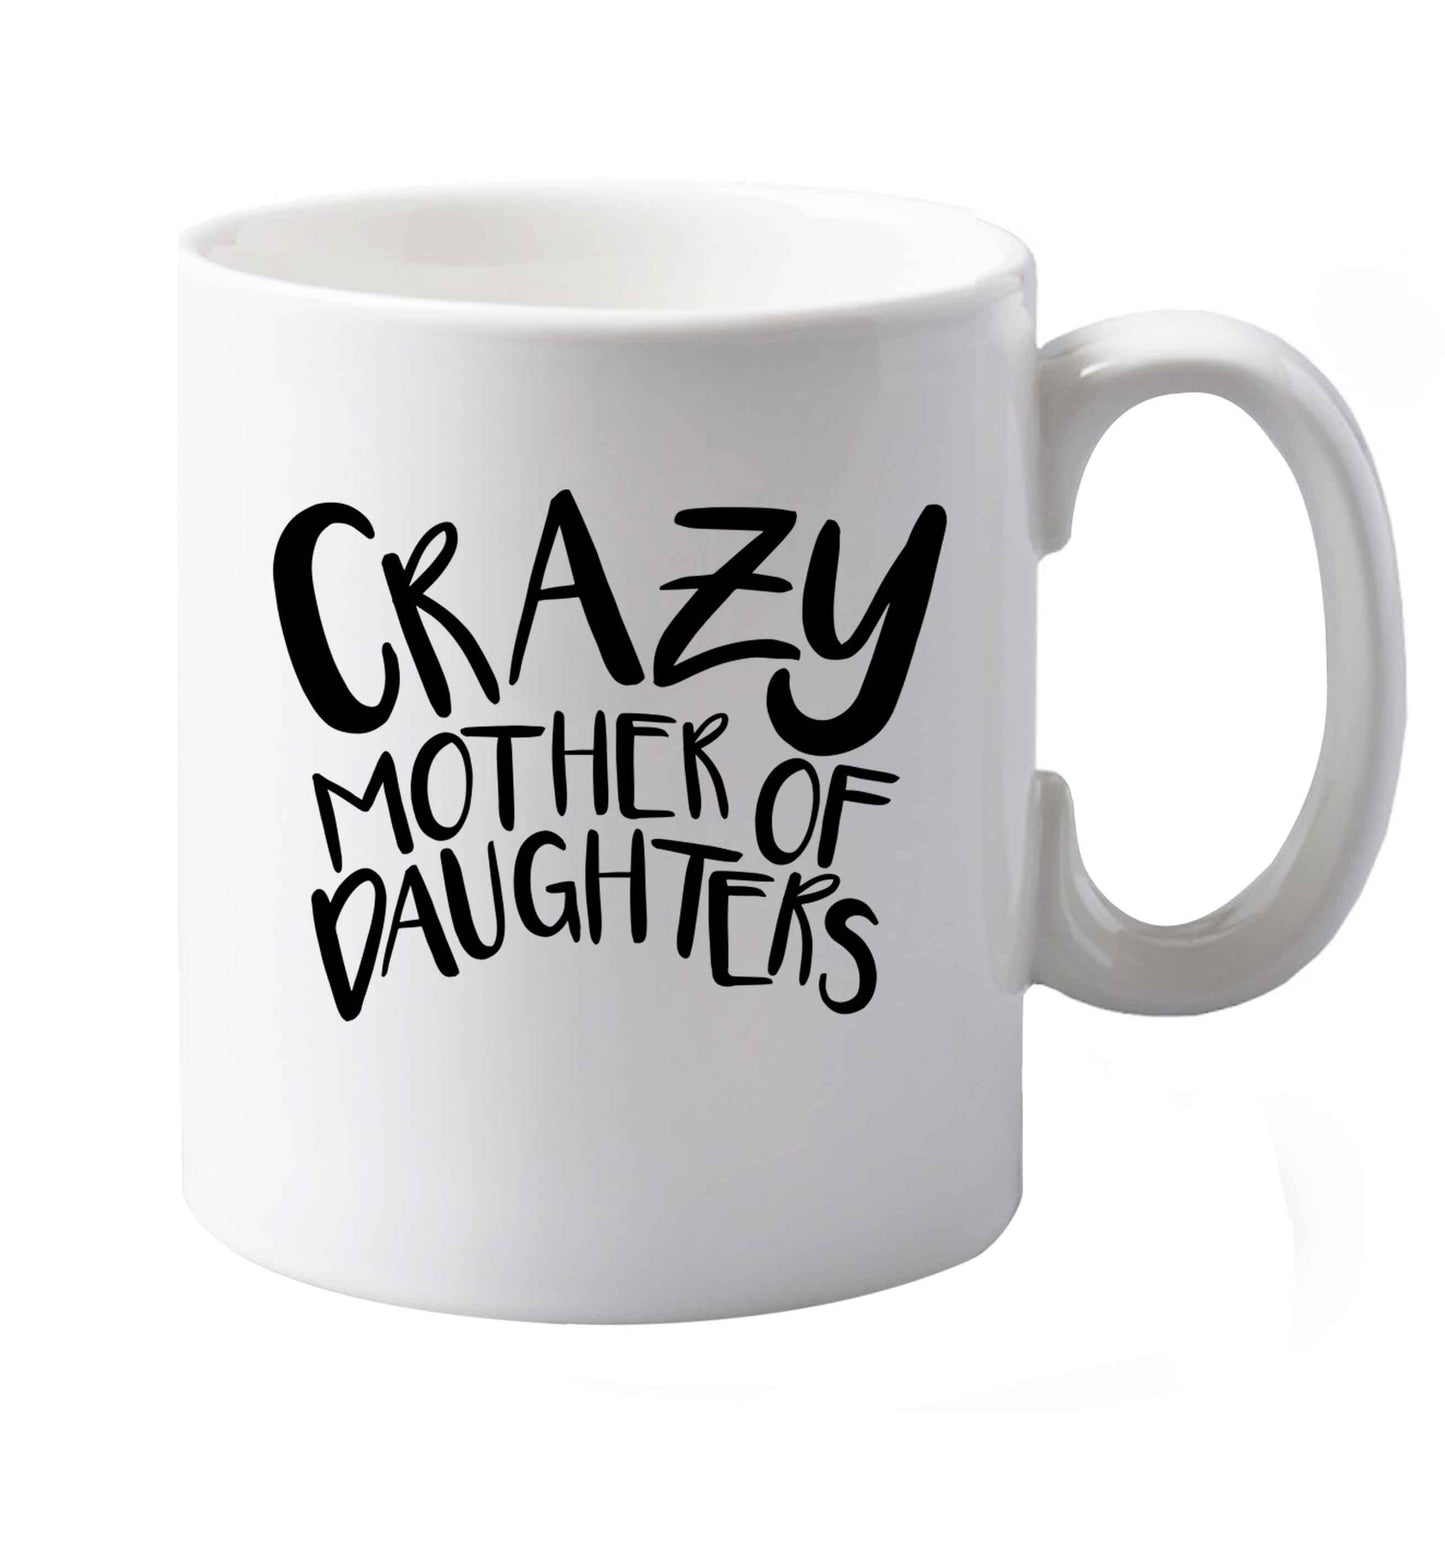 10 oz Crazy mother of daughters ceramic mug both sides